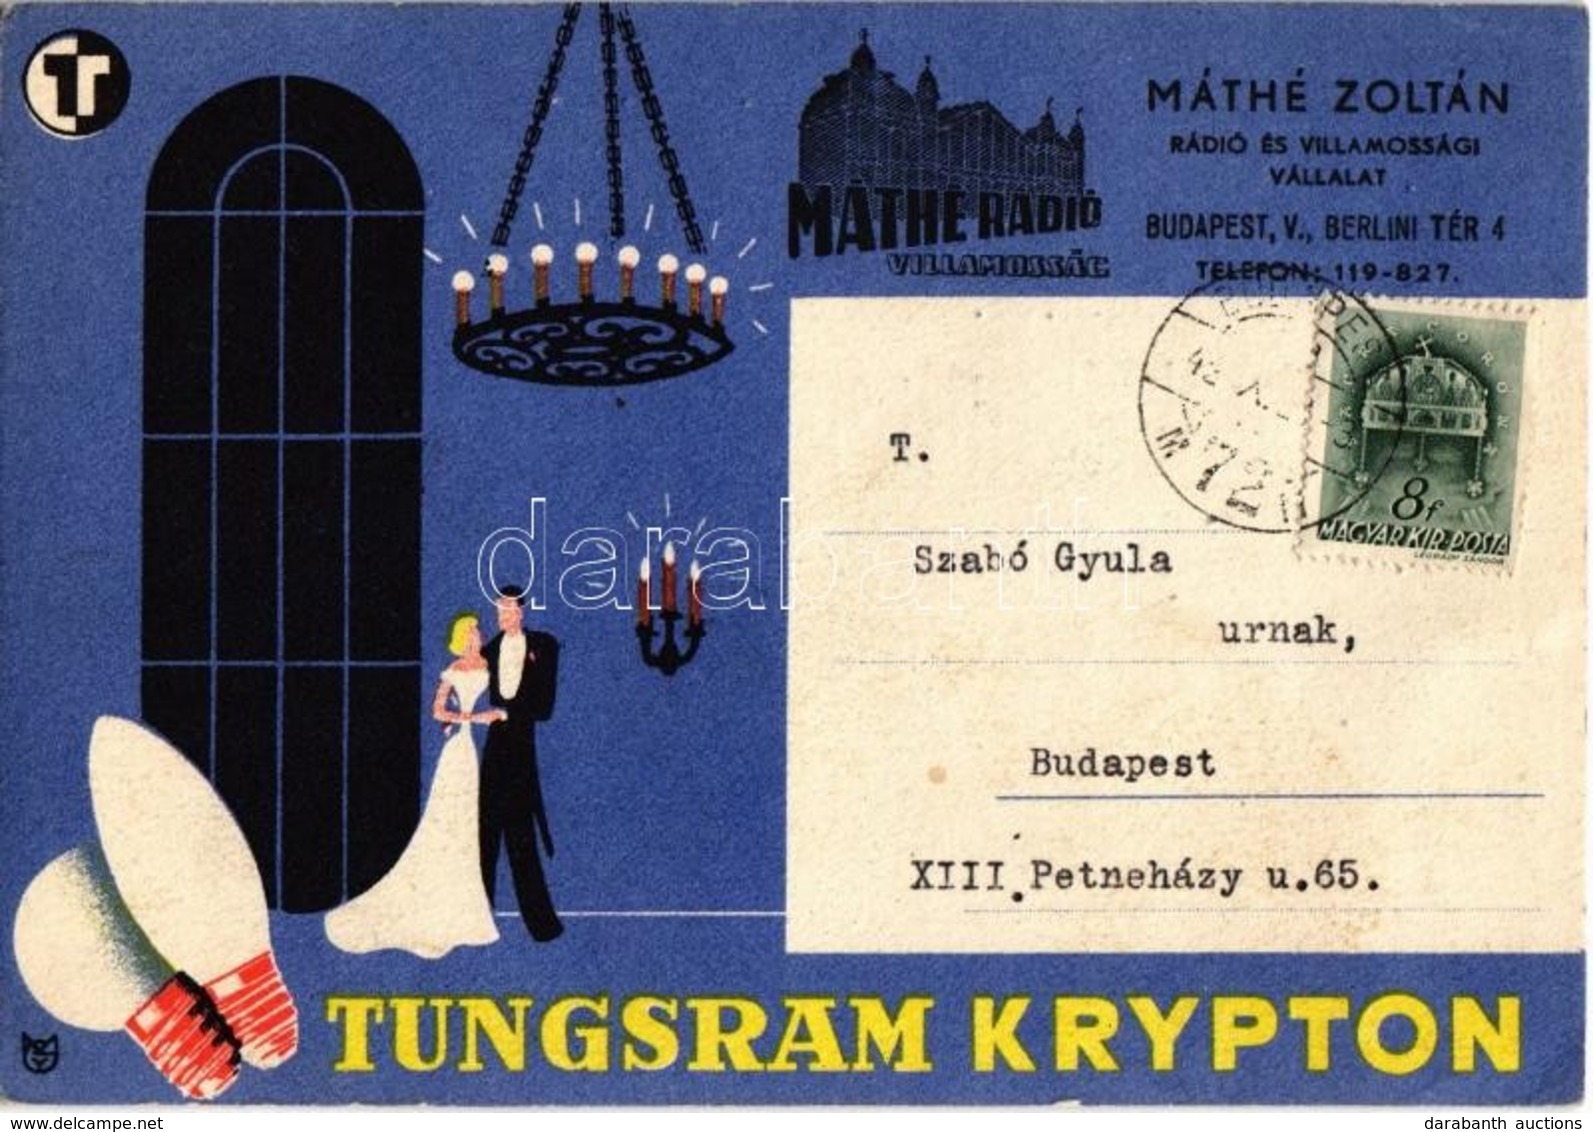 T2/T3 1942 Tungsram Krypton Izzó Reklámlapja. Máthé Zoltán Rádió és Villamossági Vállalat / Hungarian Light Bulb Adverti - Unclassified